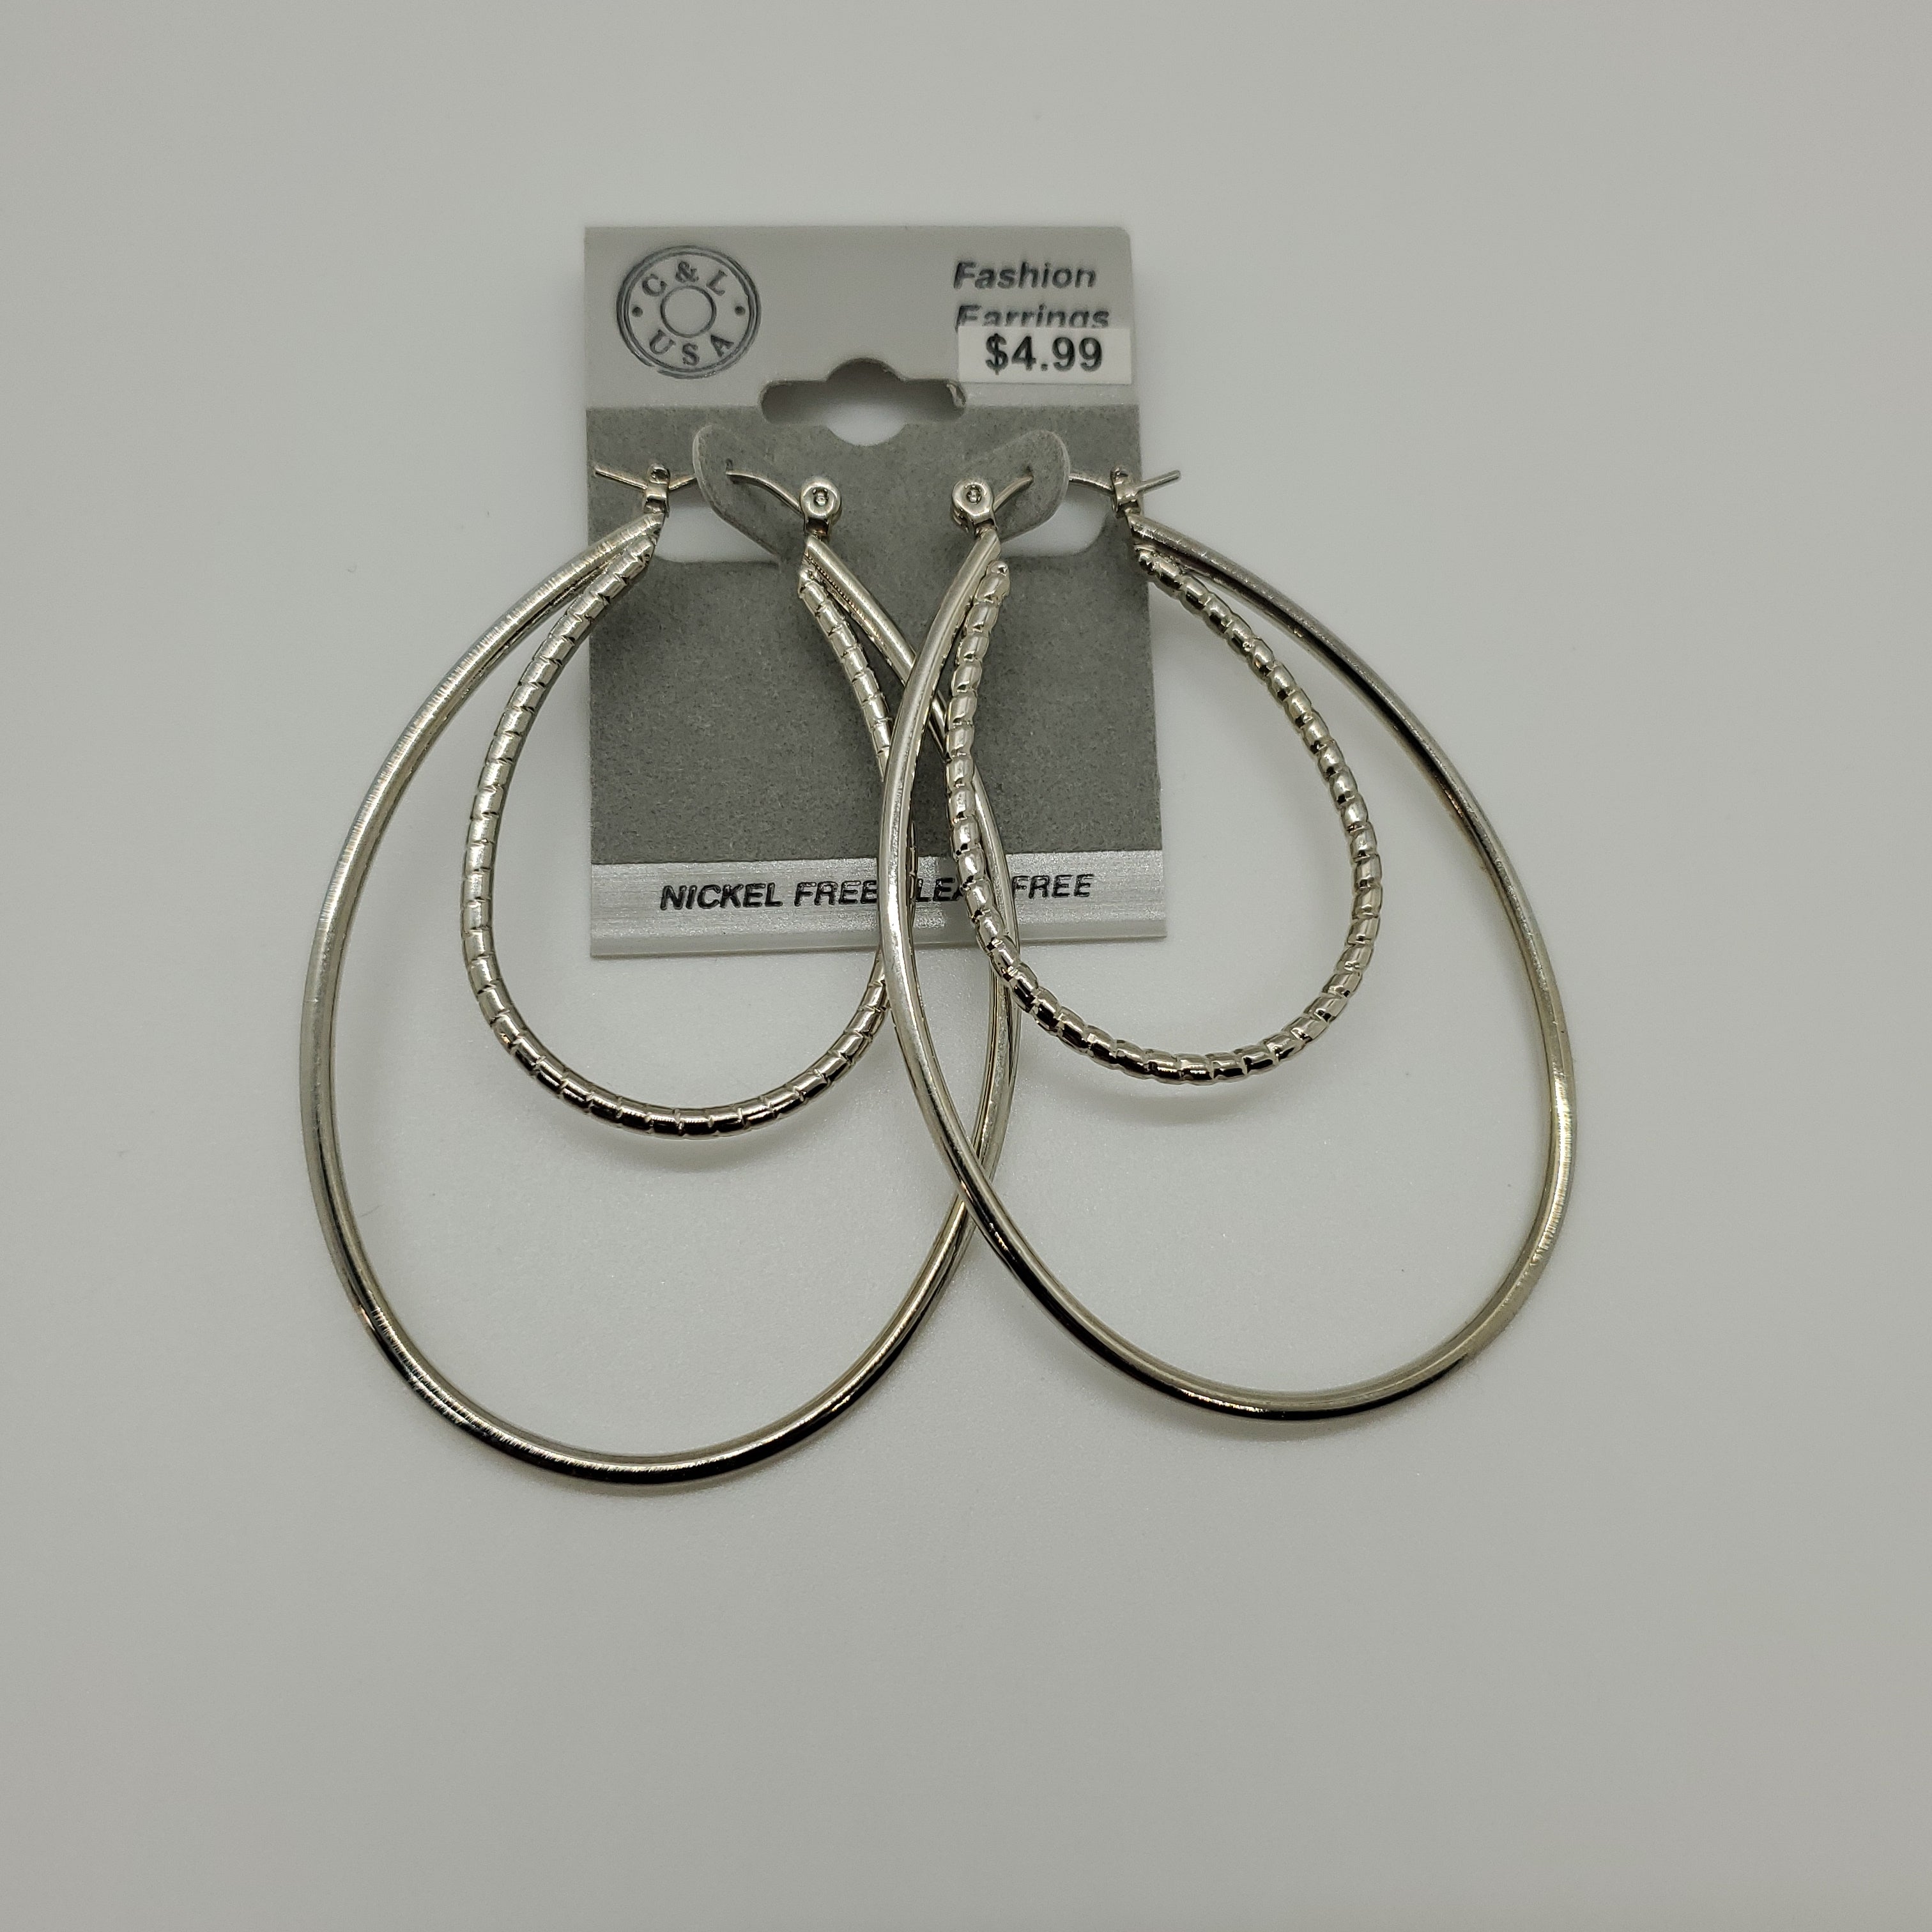 Silver Plated Pincatch Hoop Earrings NPK436 - Beauty Bar & Supply